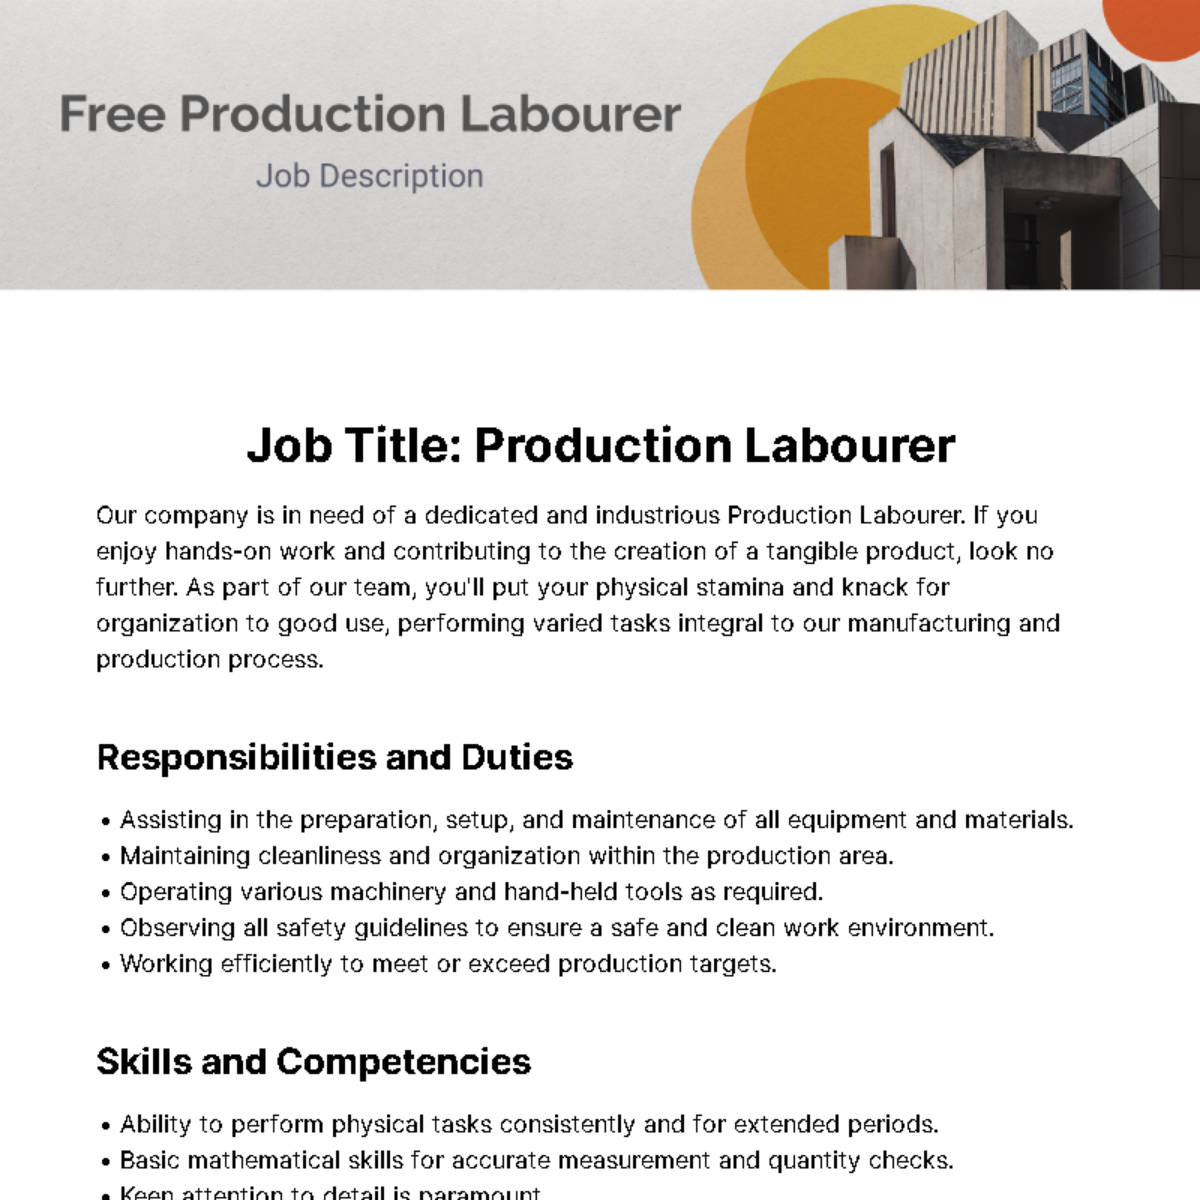 Production Labourer Job Description Template - Edit Online & Download ...